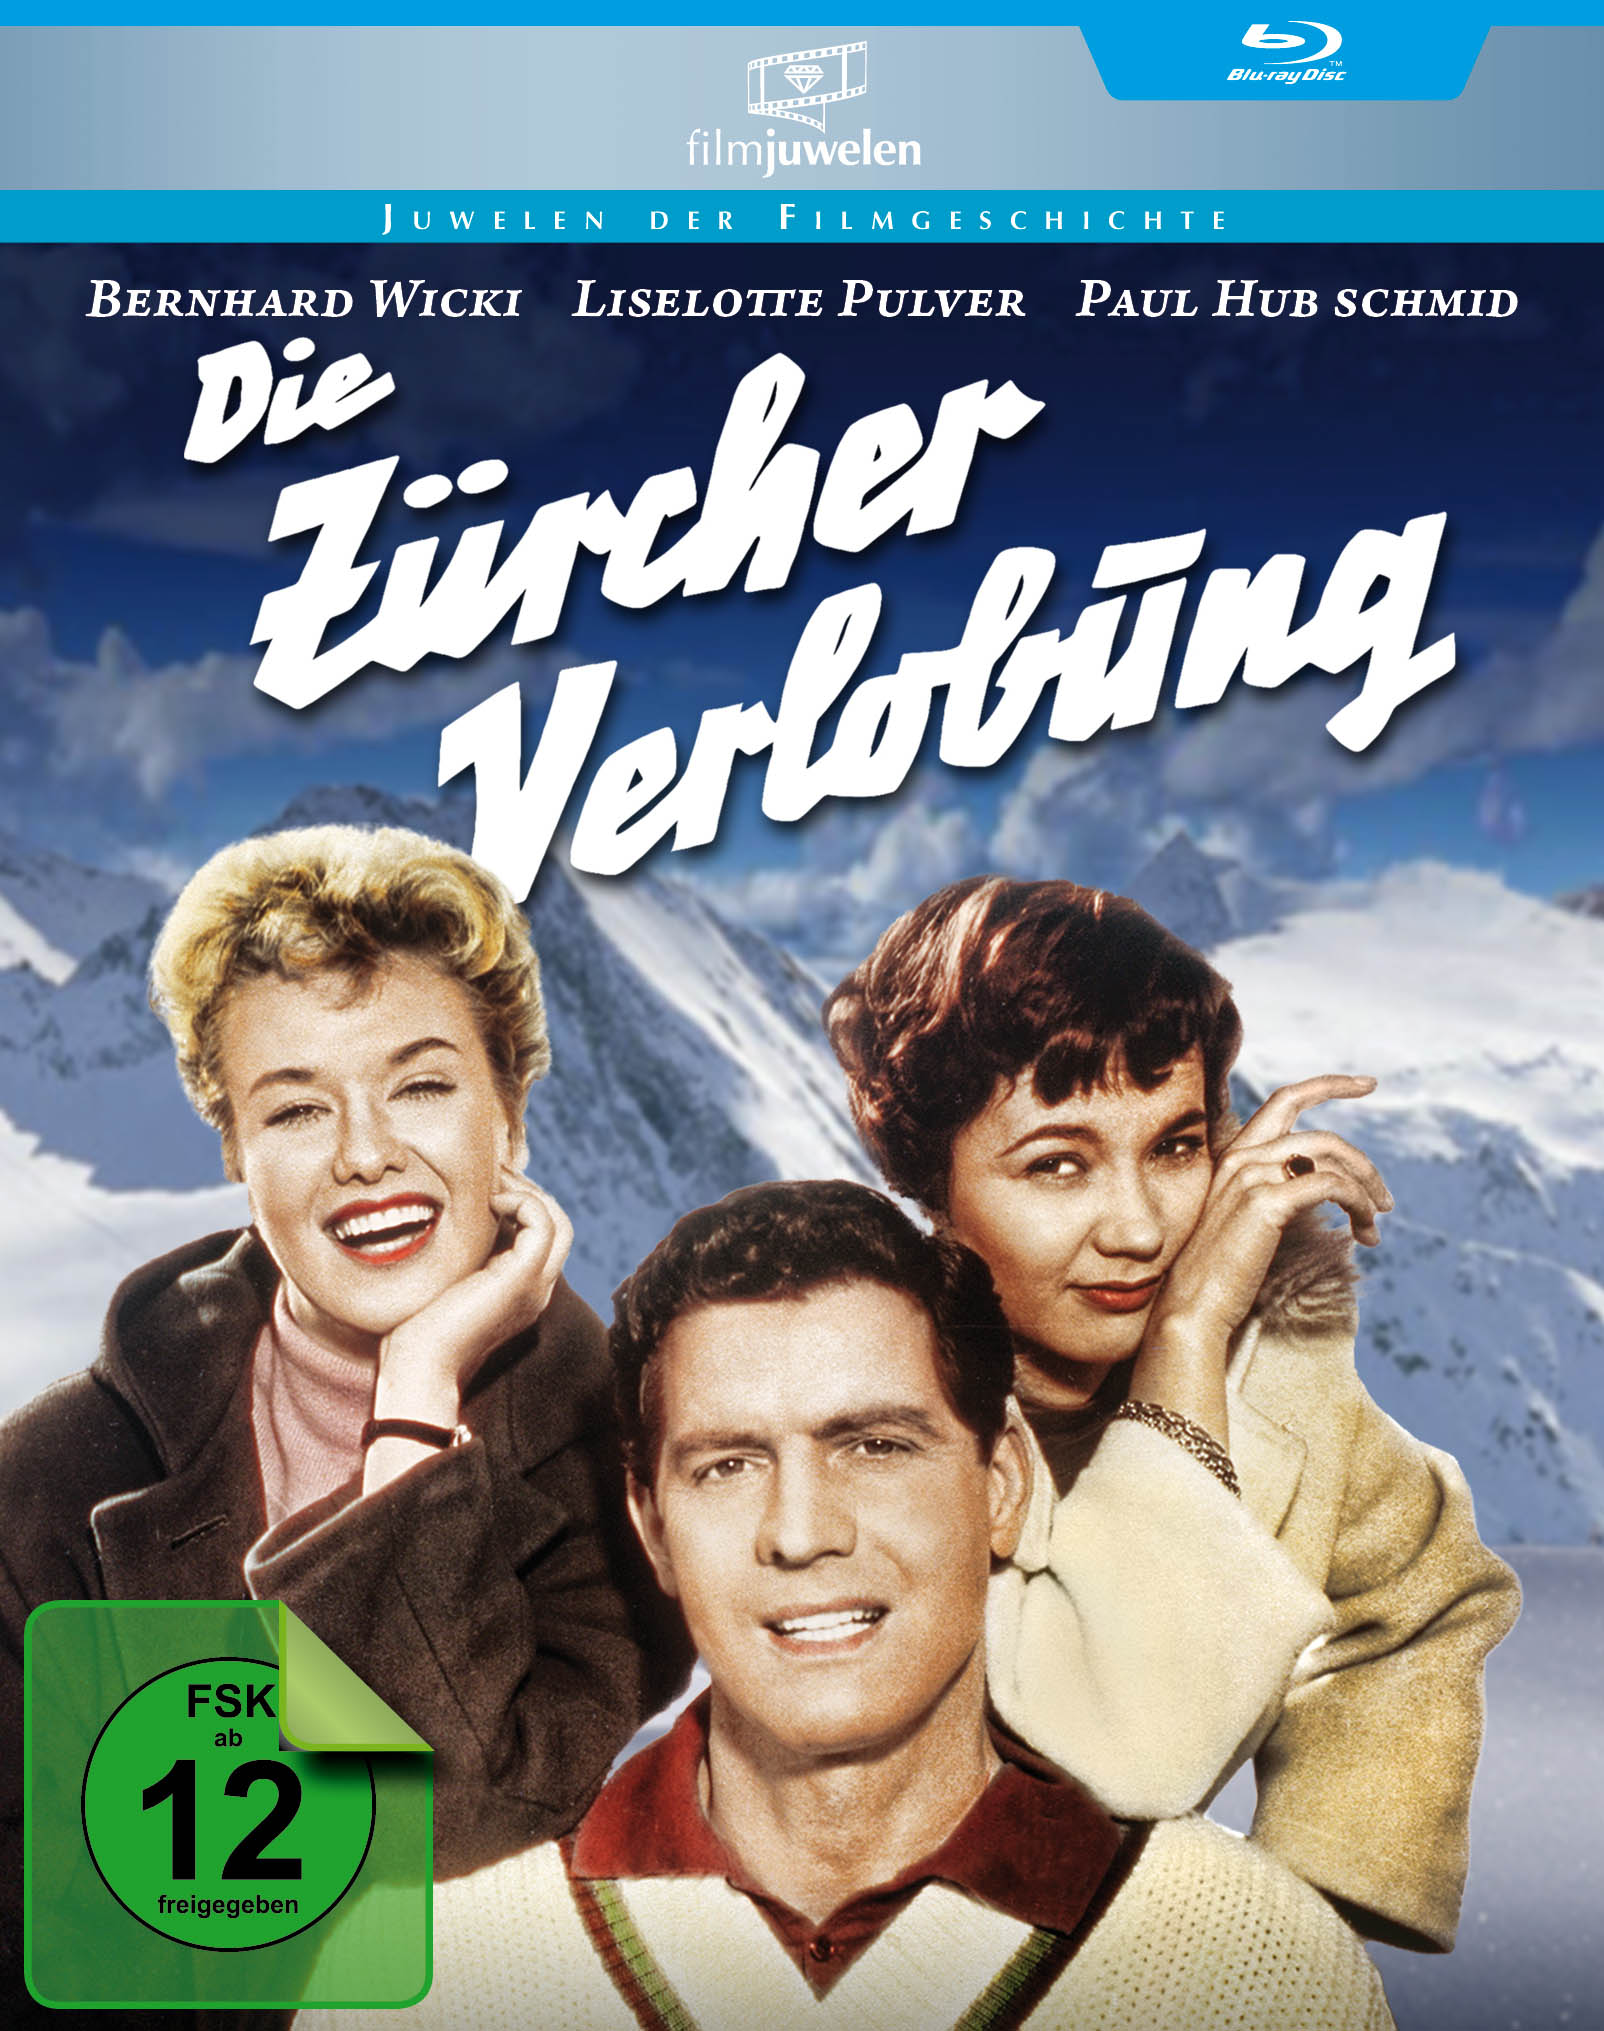 ZÜRCHER VERLOBUNG Blu-ray DIE